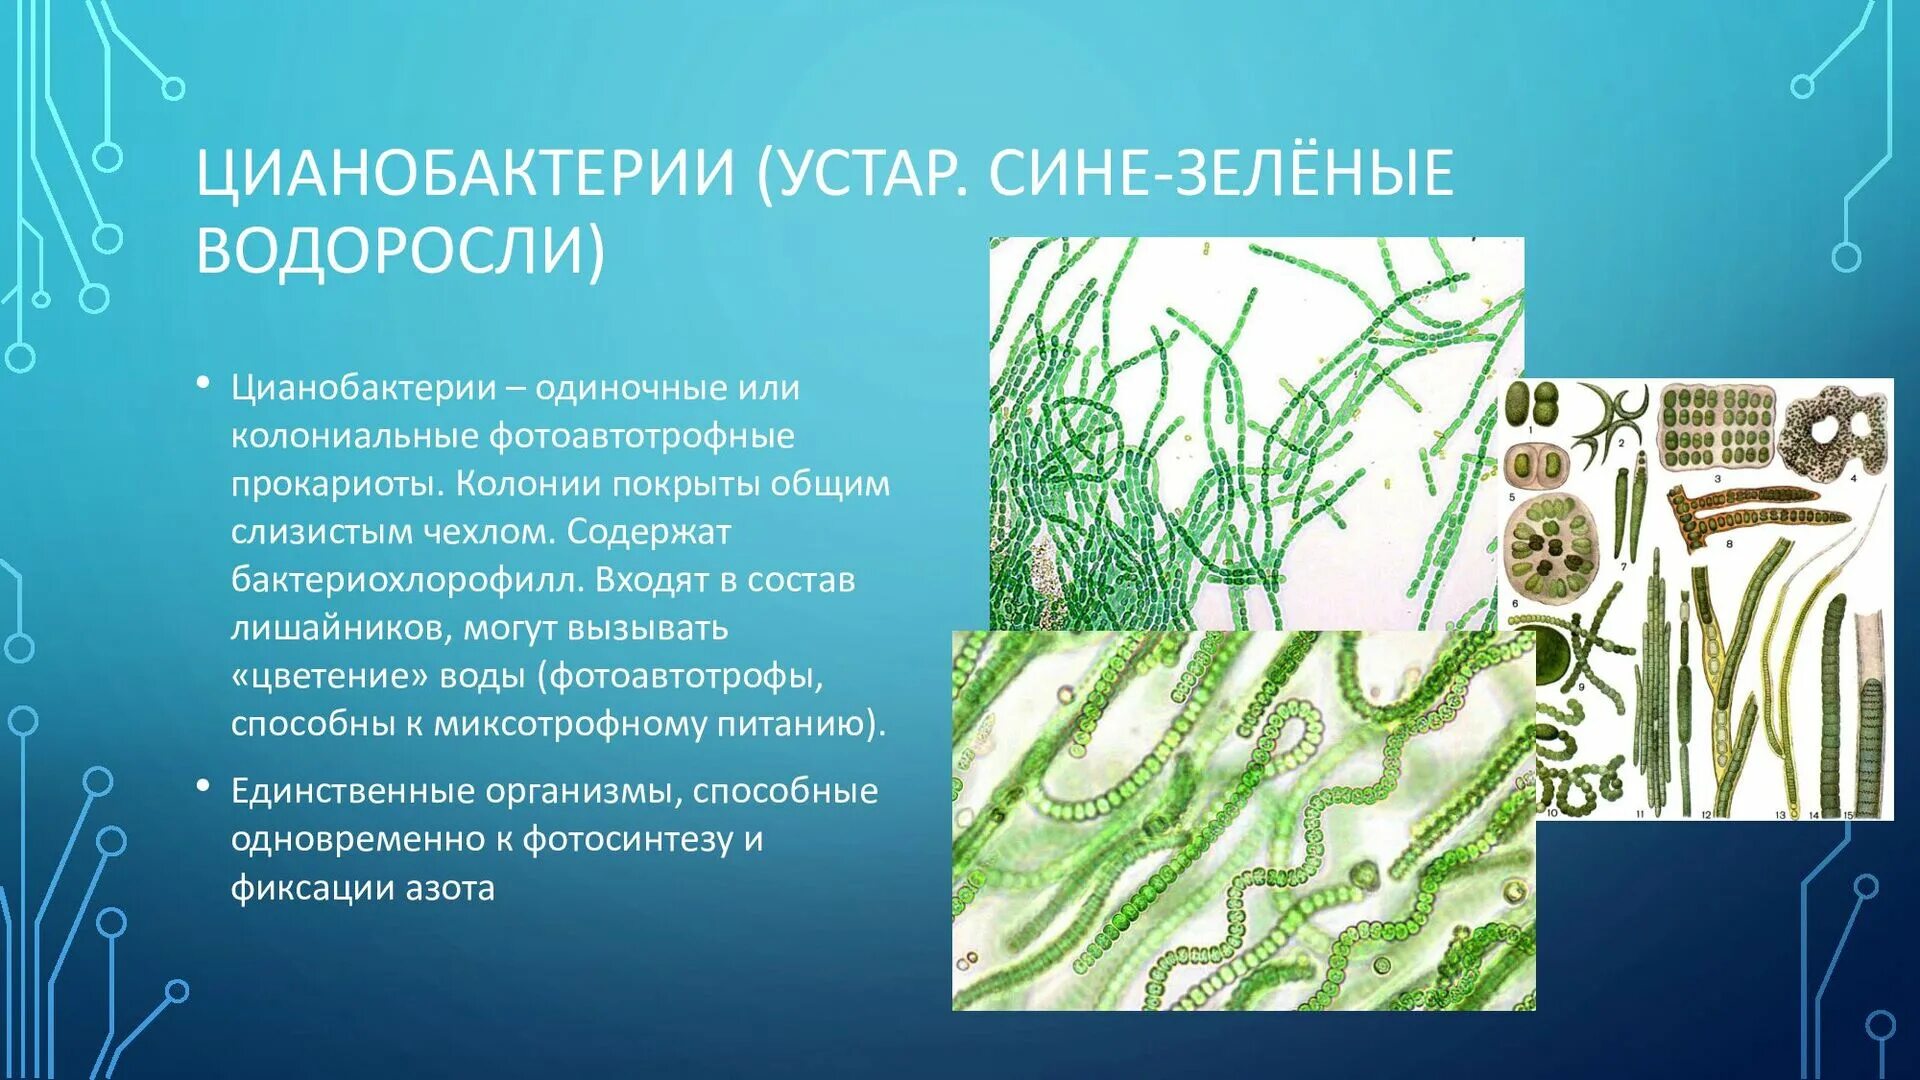 Цианобактерии сине-зеленые водоросли. Цианобактерия это водоросль. Хамесифоновые цианобактерии. Фотосинтезирующие цианобактерии. Группы организмов цианобактерии